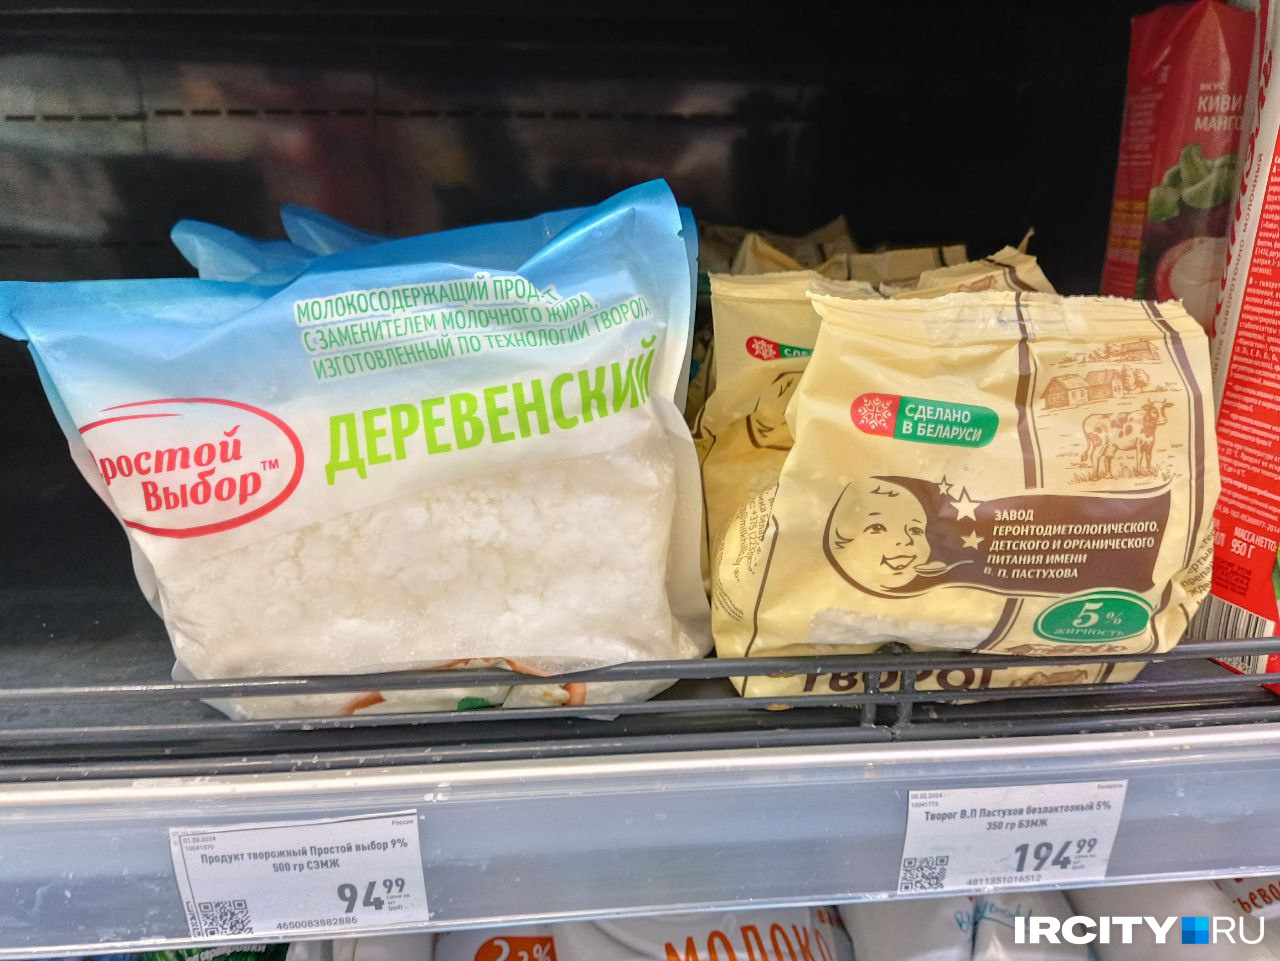 Еще одна собственная марка — «Простой выбор» и, судя по всему, продукция Белоруссии